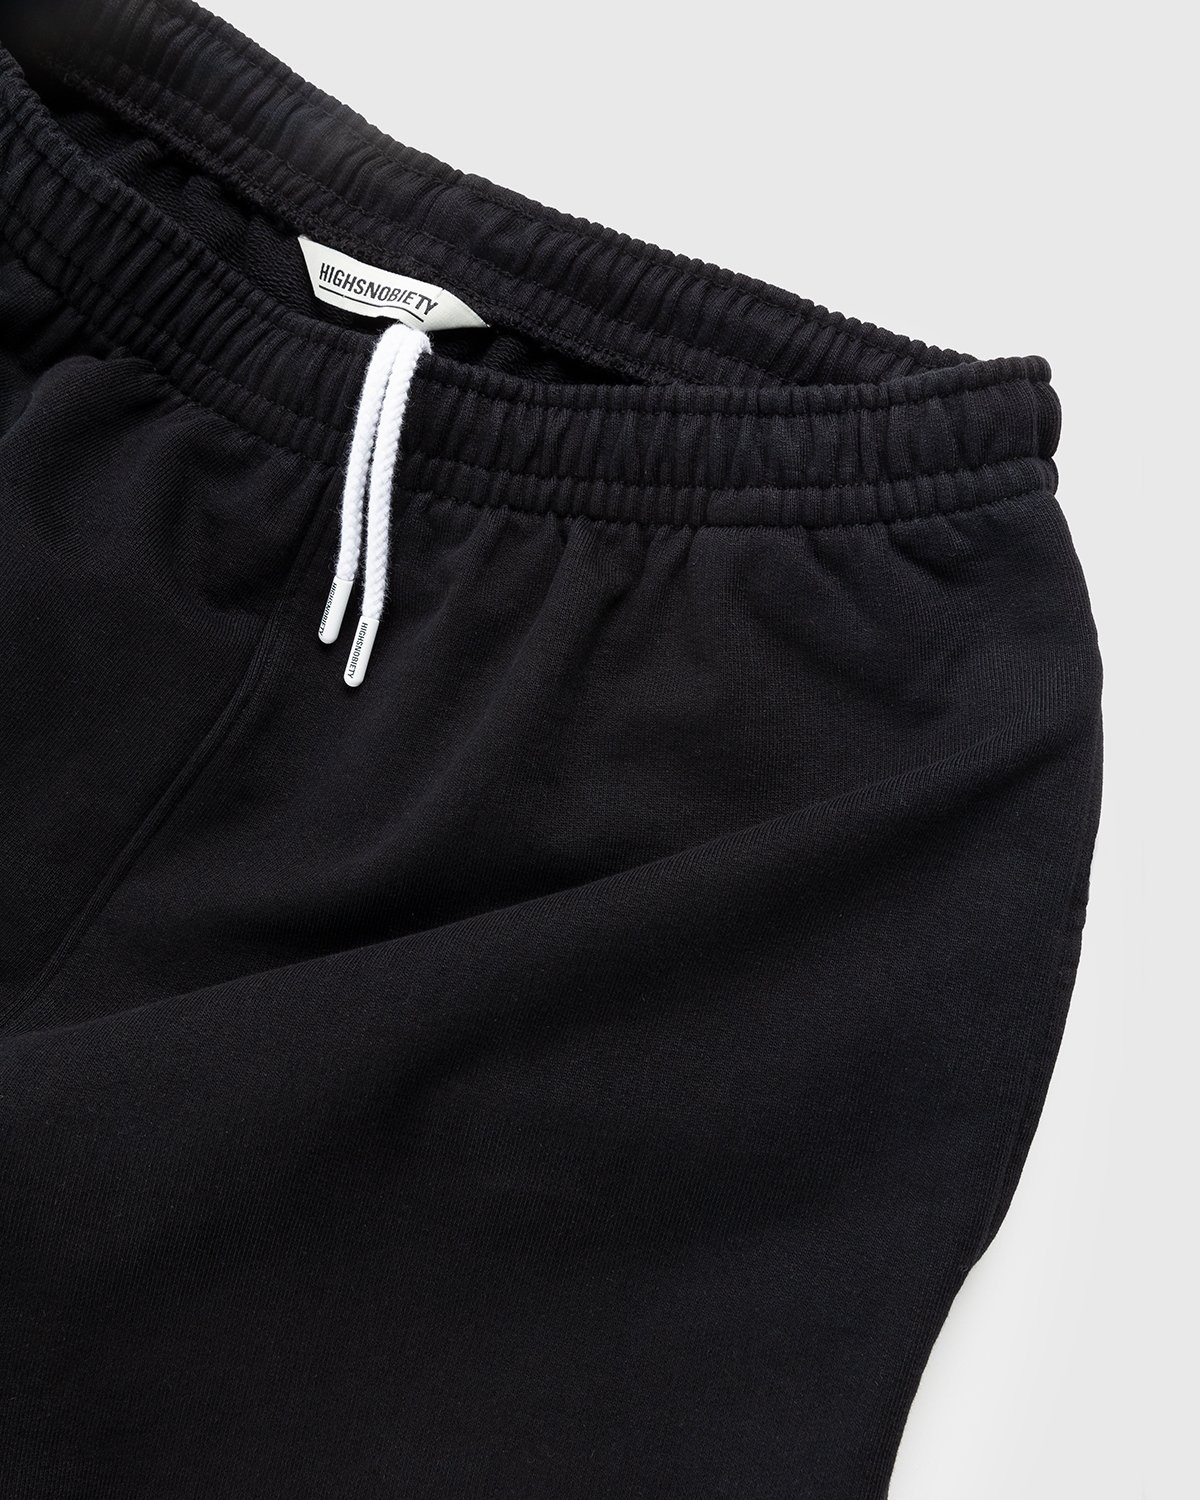 Highsnobiety – Staples Shorts Black - Shorts - Black - Image 5